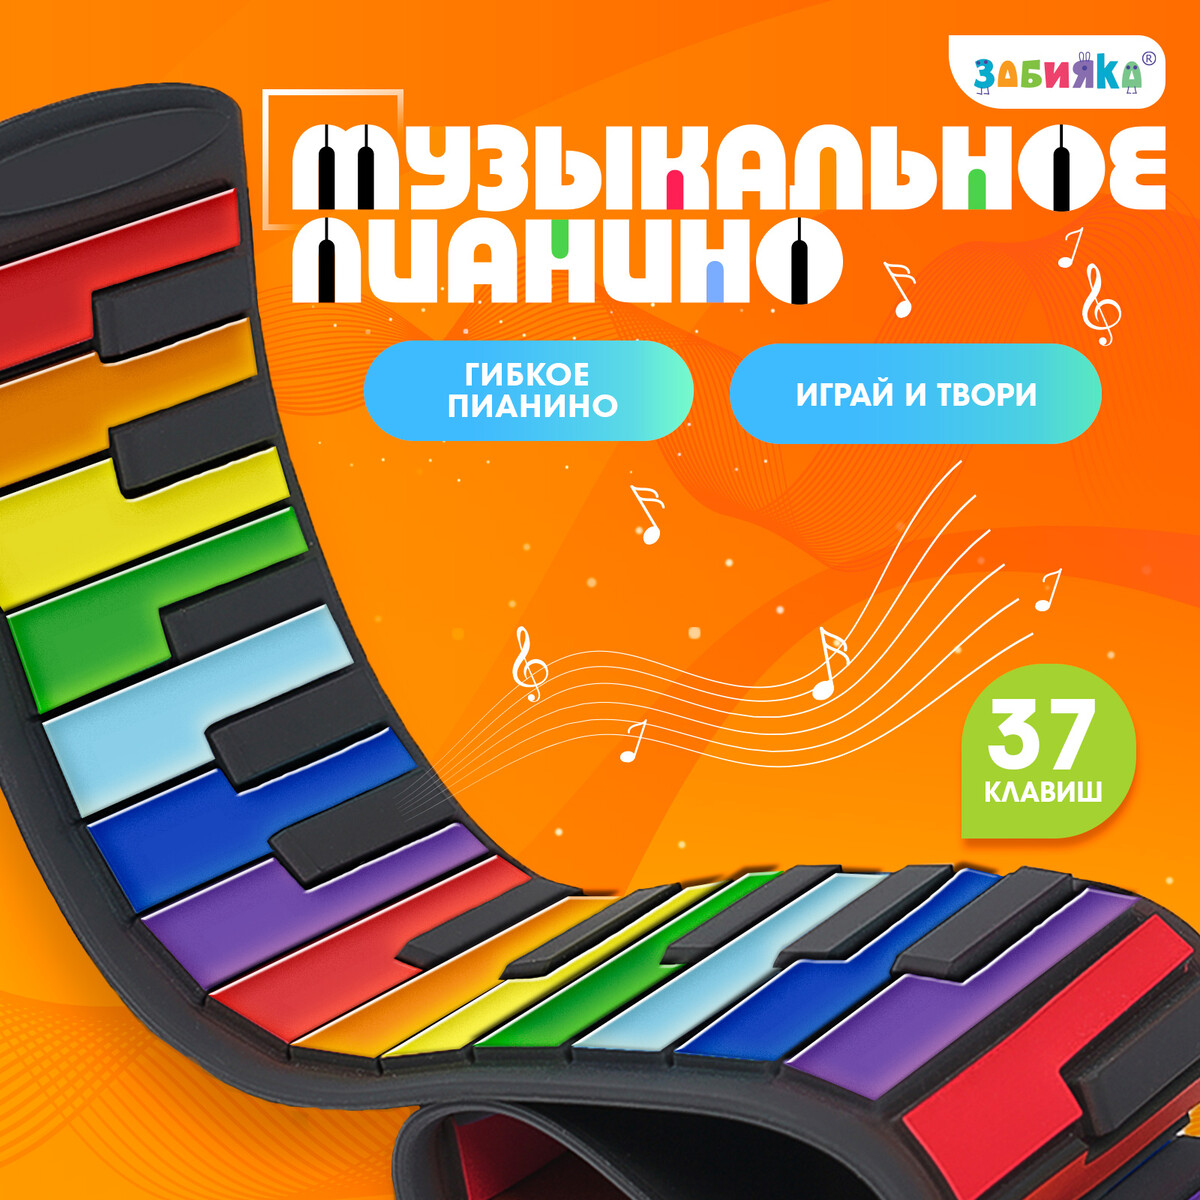 Музыкальное пианино, звук ZABIAKA, цвет разноцветный